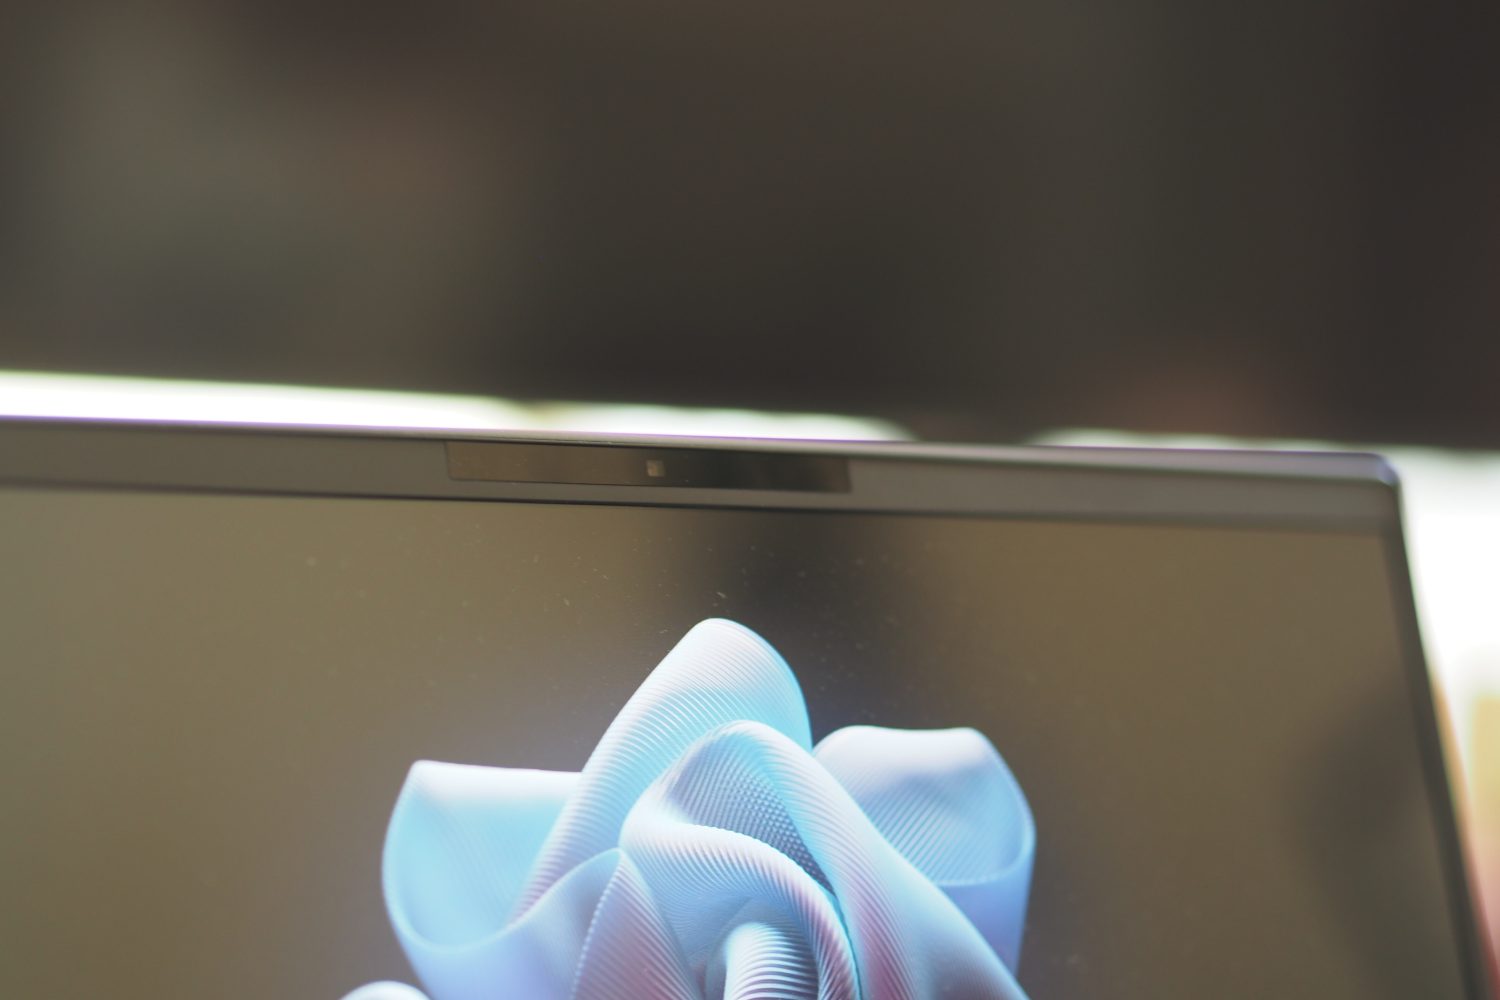 Vista frontal do HP Elite Dragonfly G3 mostrando a webcam.